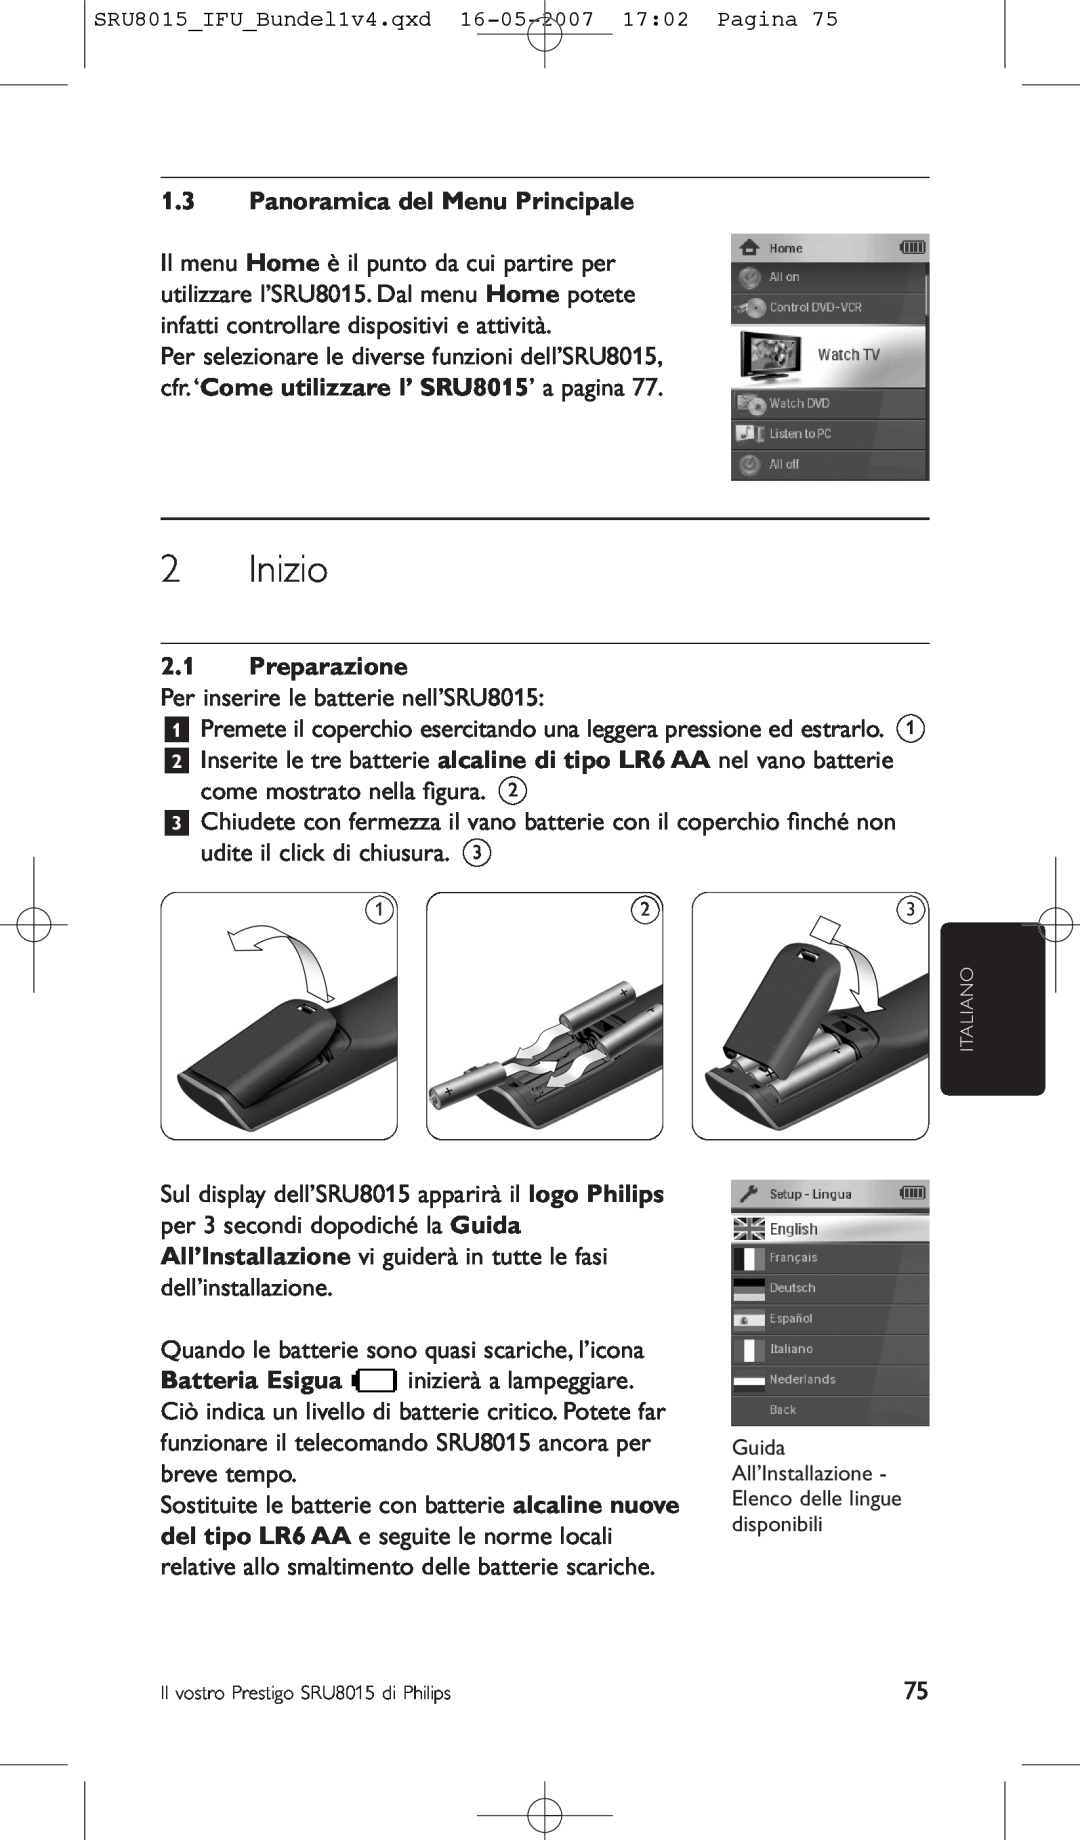 Philips SRU8015 manual Inizio, Panoramica del Menu Principale, Preparazione 